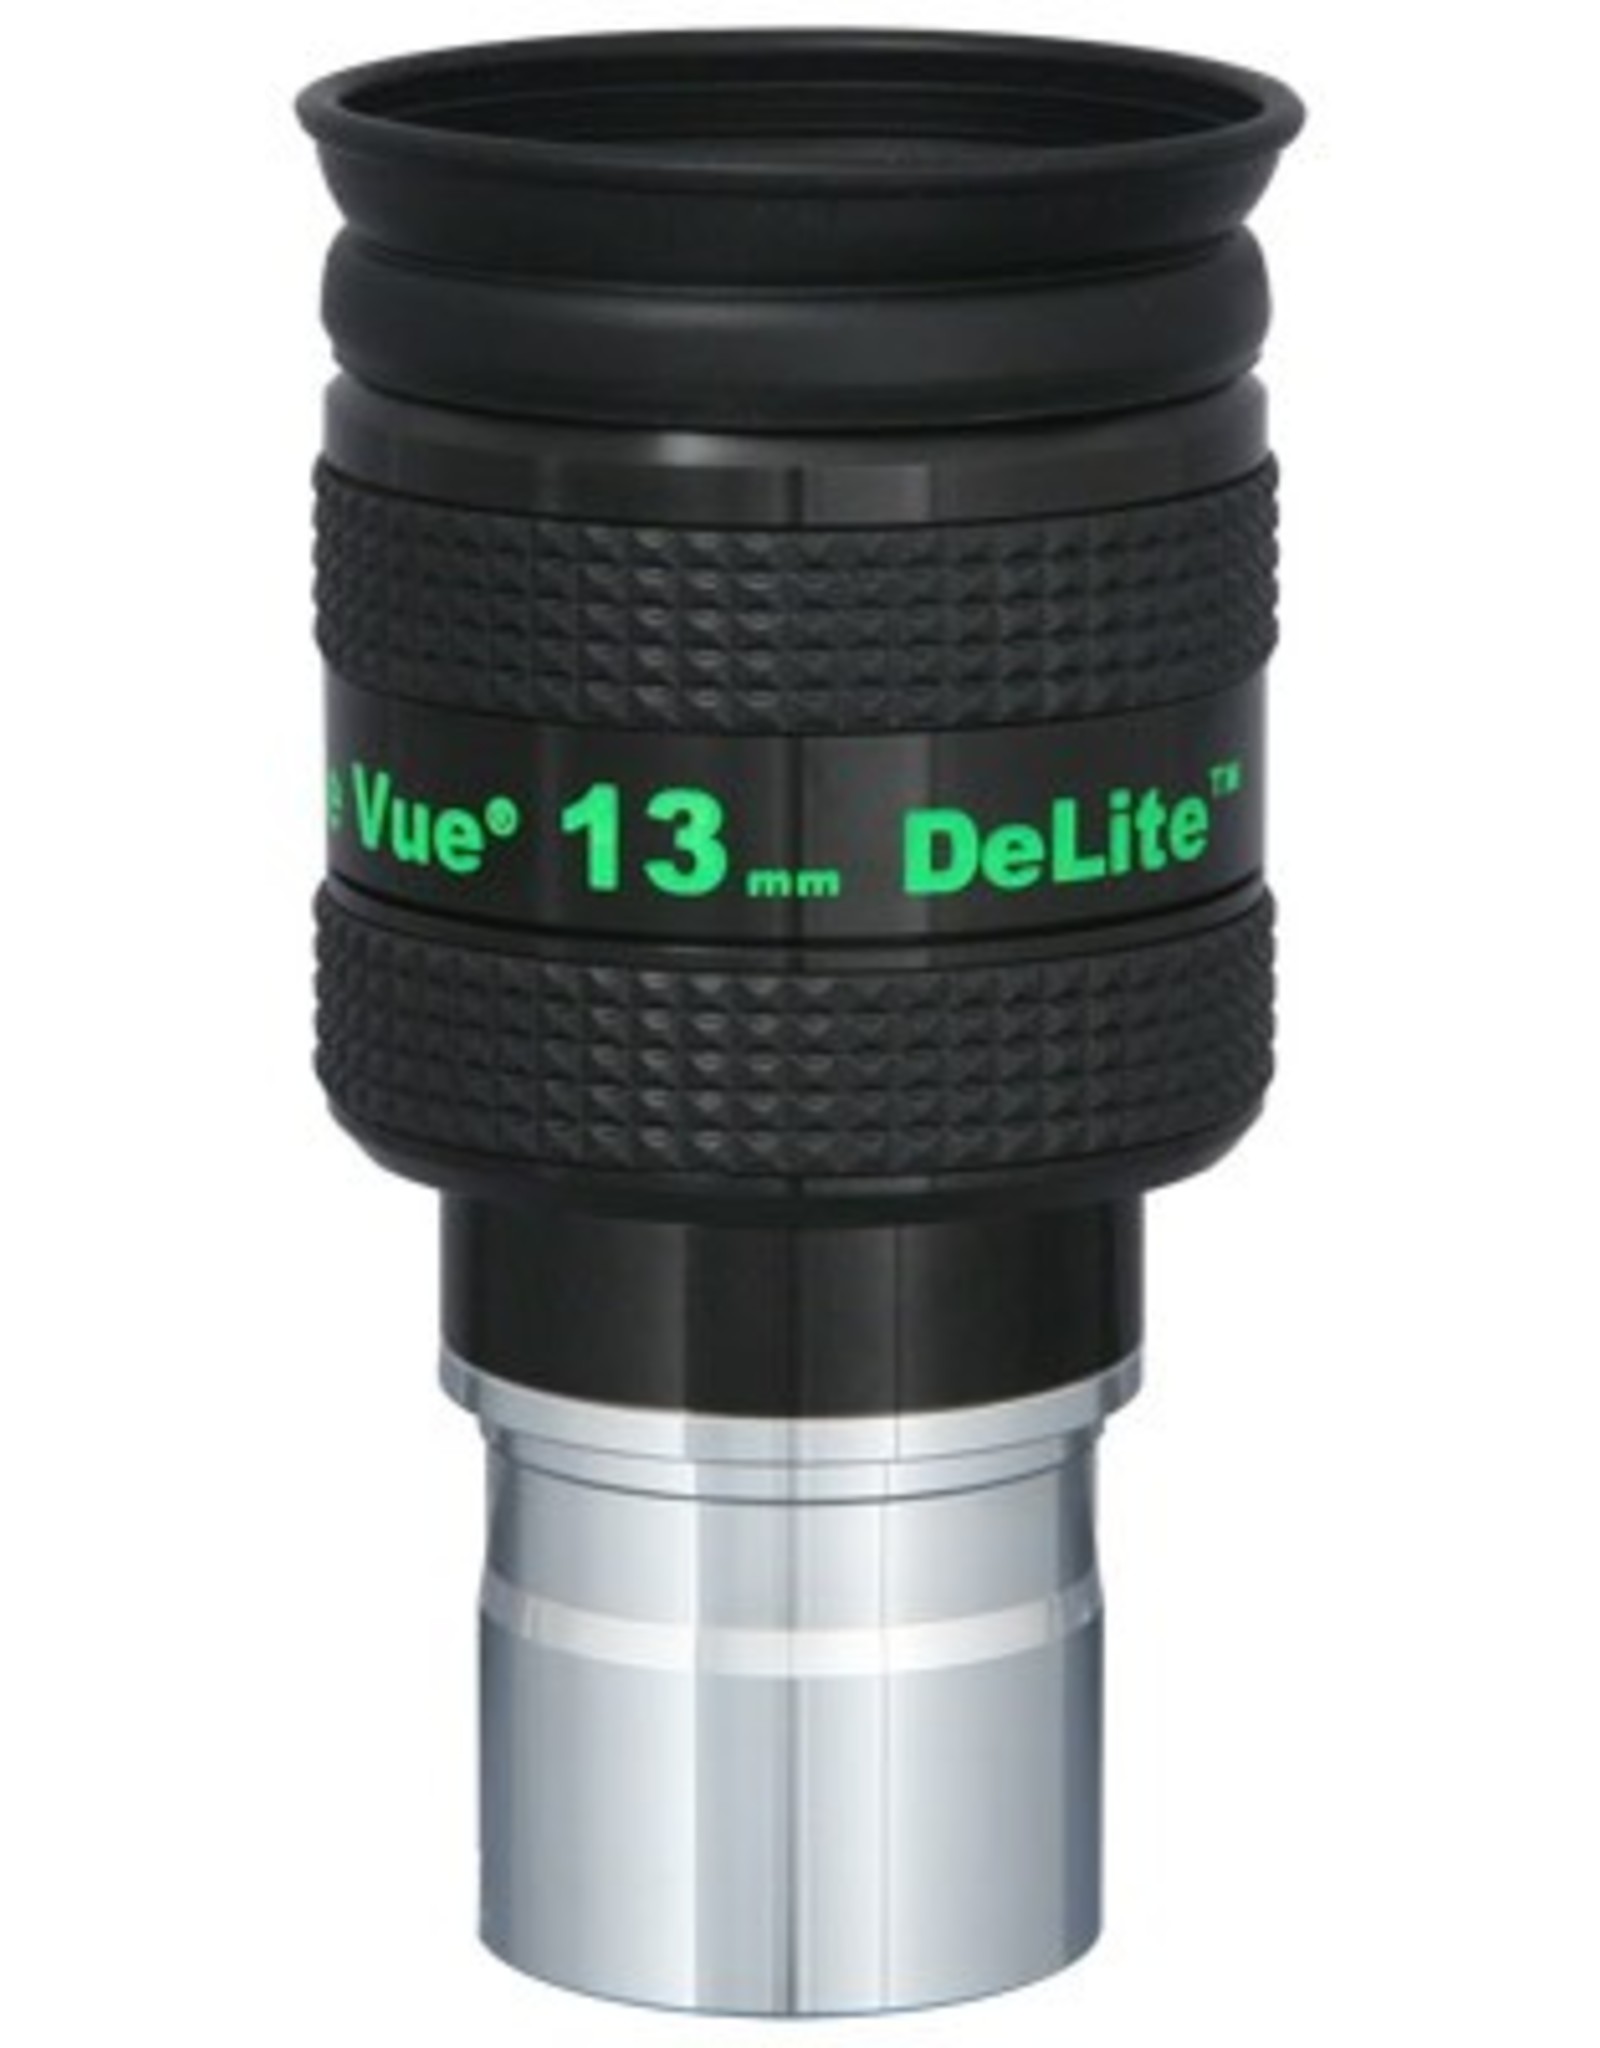 Tele Vue DeLite 13mm Eyepiece 1.25